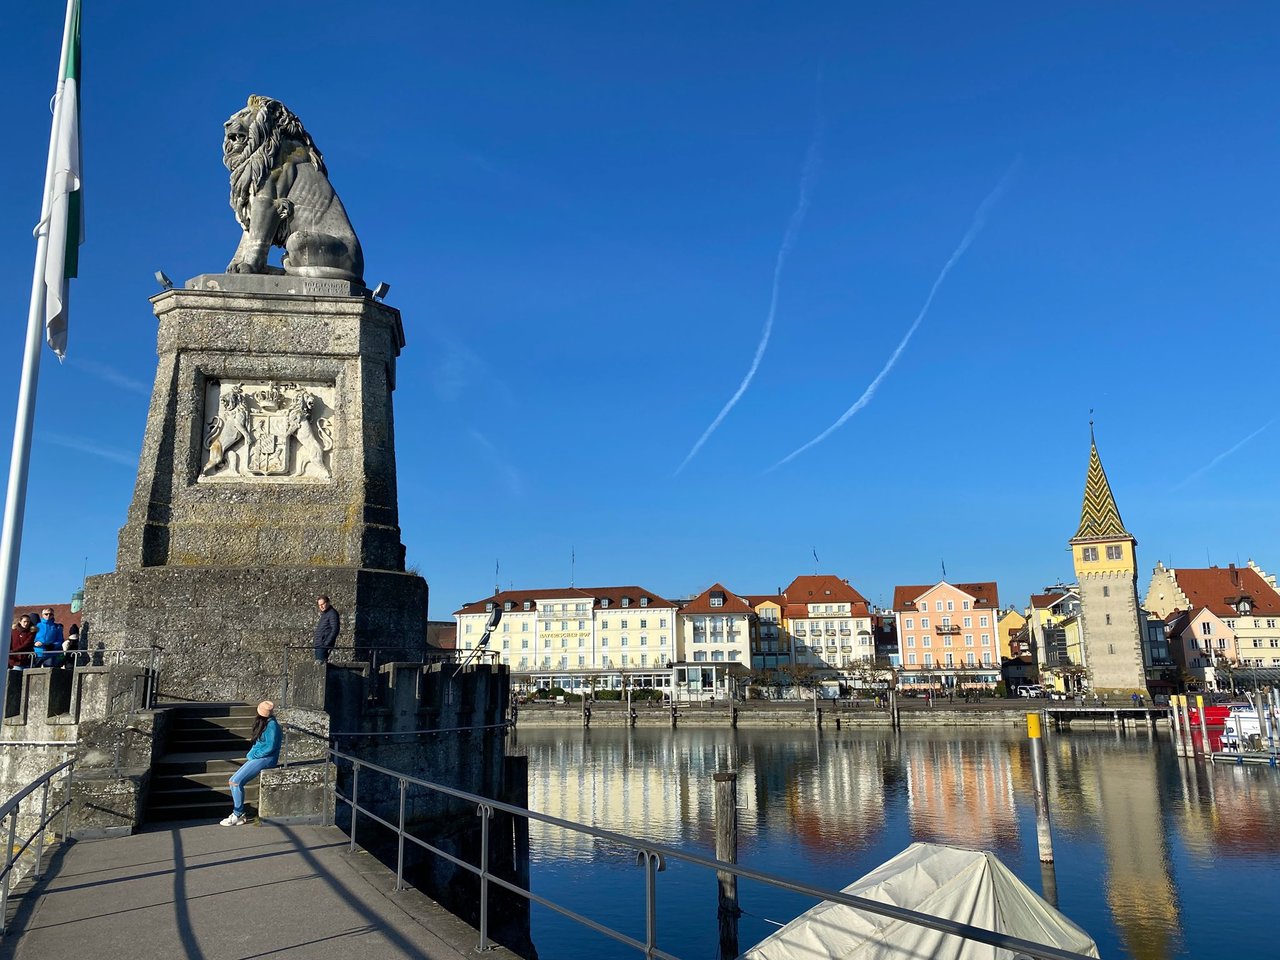 Herzliche Grüsse vom #Bodensee! 🤩 #HappySunday #Lindau #Bayern #Deutschland https://t.co/y2k738NCEQ